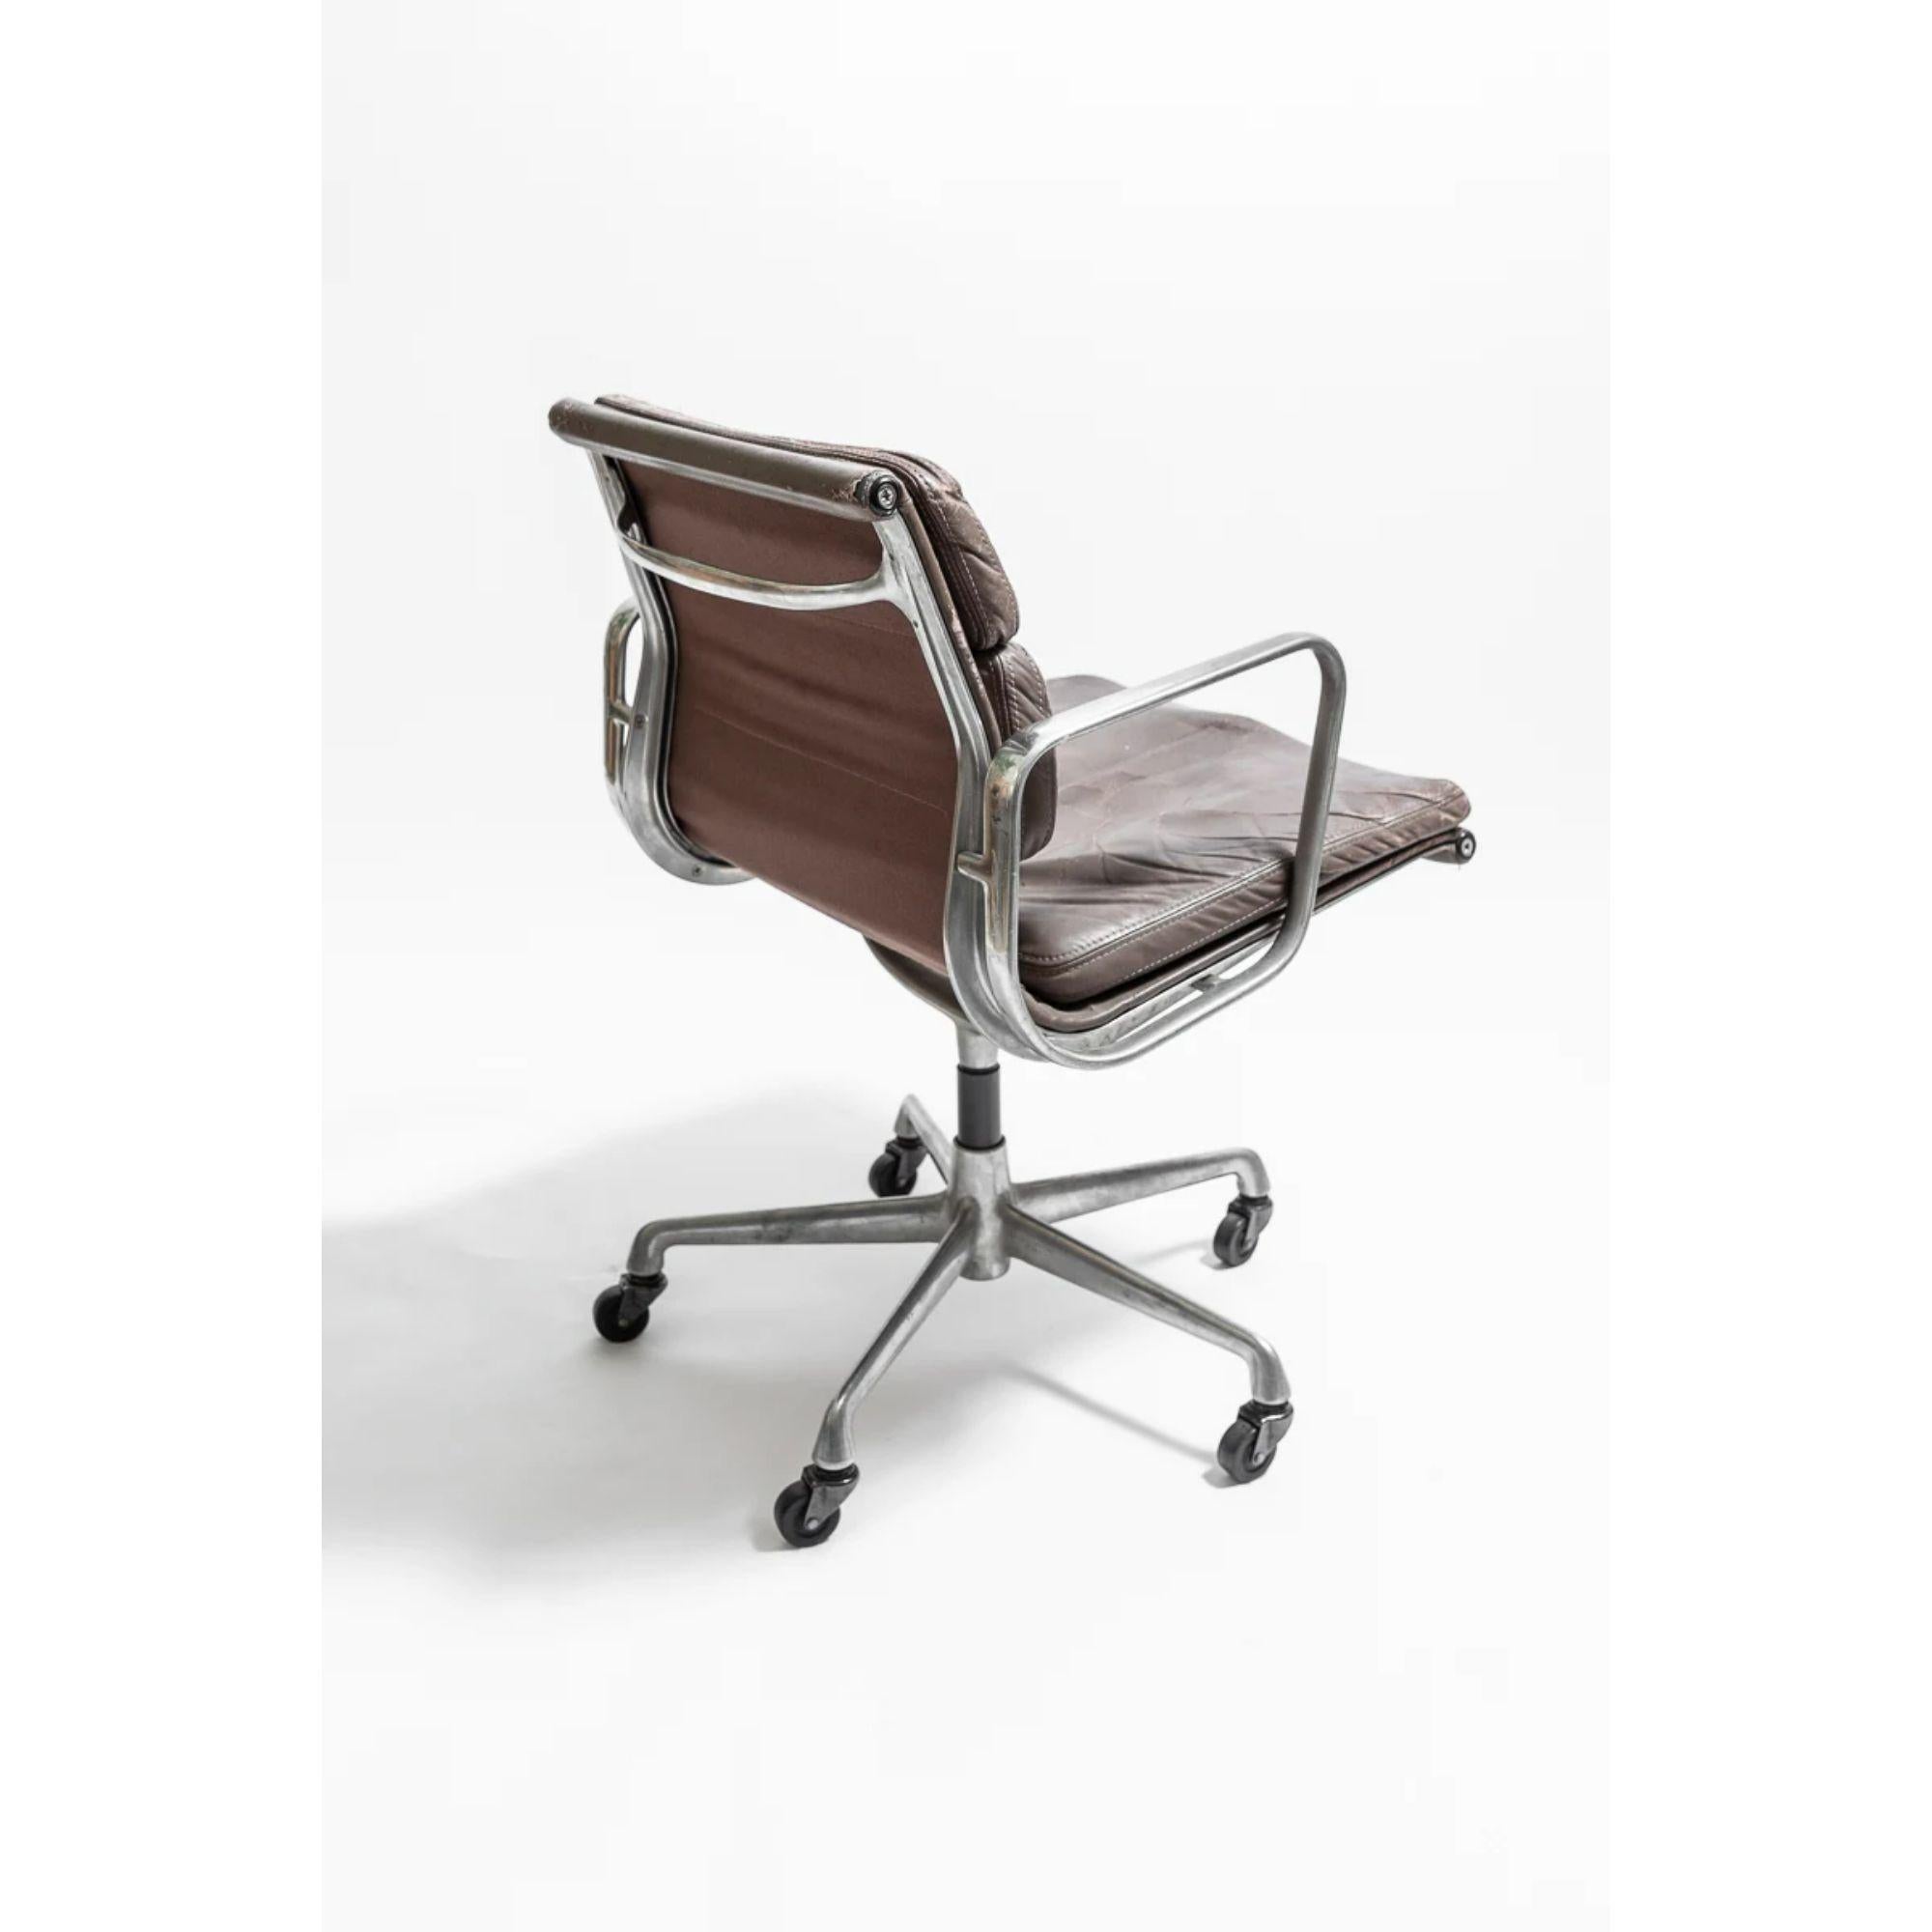 Chaise de bureau par Charles & Ray Eames pour Herman Miller, 1970

Cadre en aluminium. Estampillé du logo Herman Miller et de la référence 938-138.

Dimensions : H 78cm x L 58cm x P 58cm